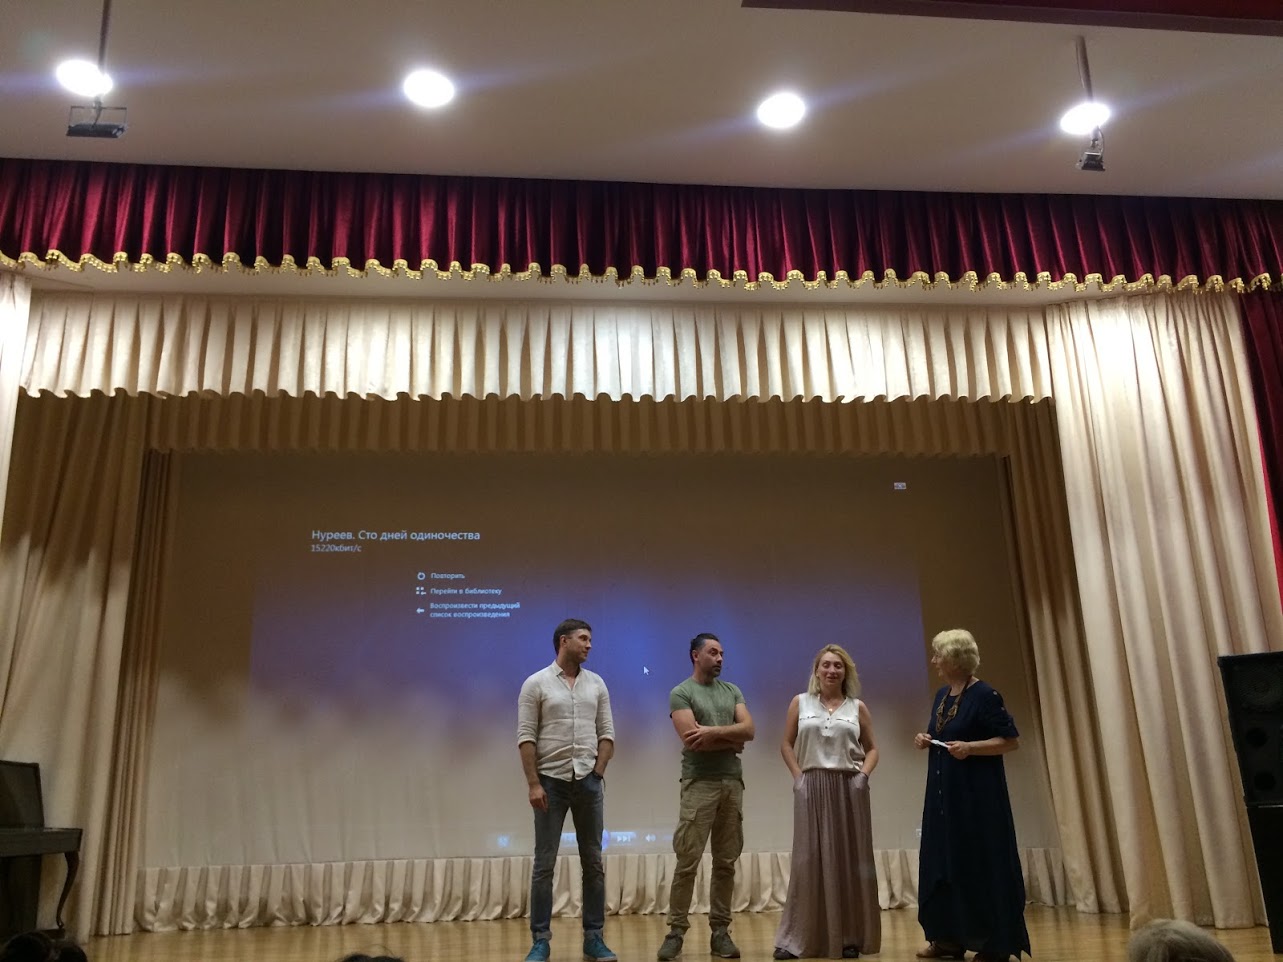 НФПП представил фильм-спектакль «Нуреев. Сто дней одиночества» в Крыму